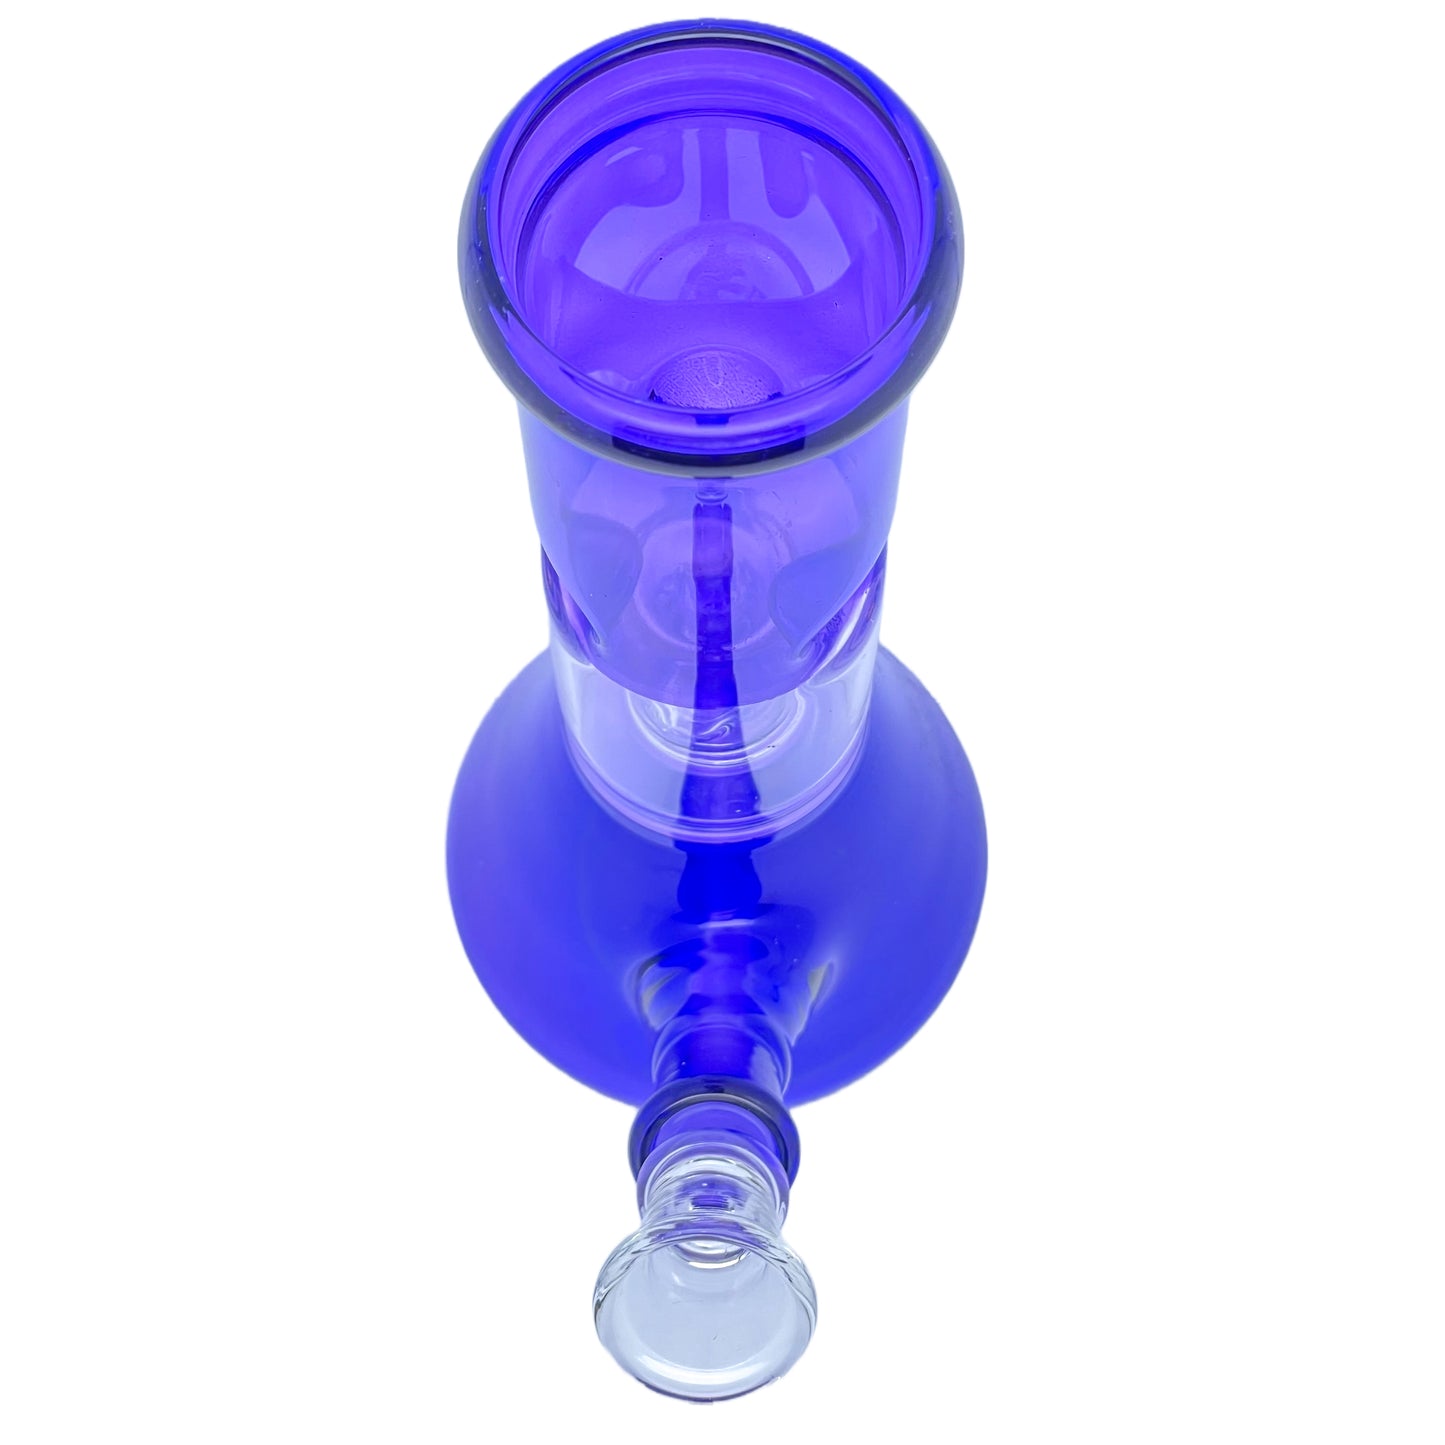 8" Straight Neck Glass Beaker Water Pipe